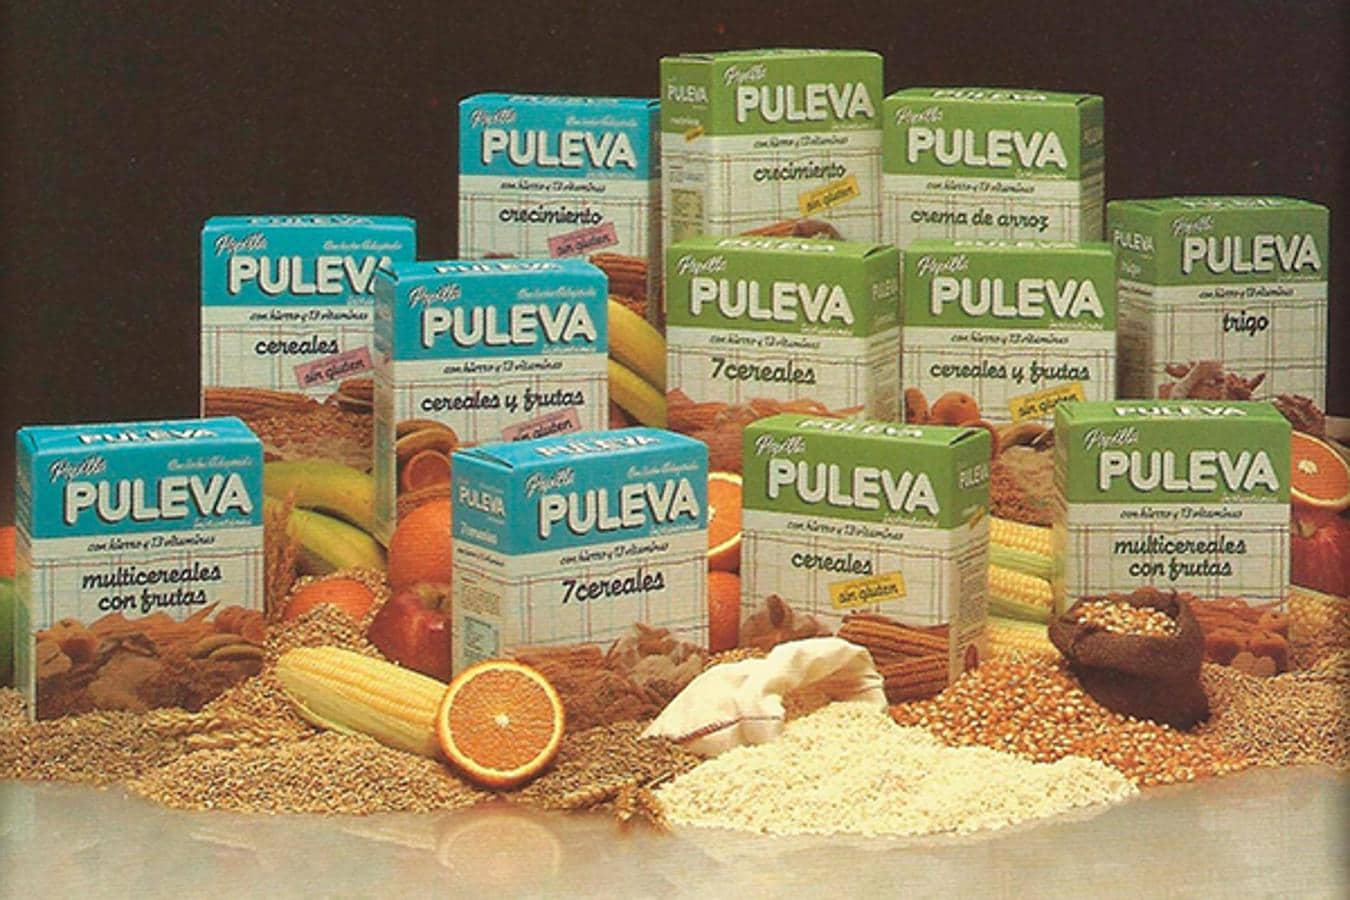 Puleva Peques 3, Puleva Max y Batidos Puleva, Productos del año 2013